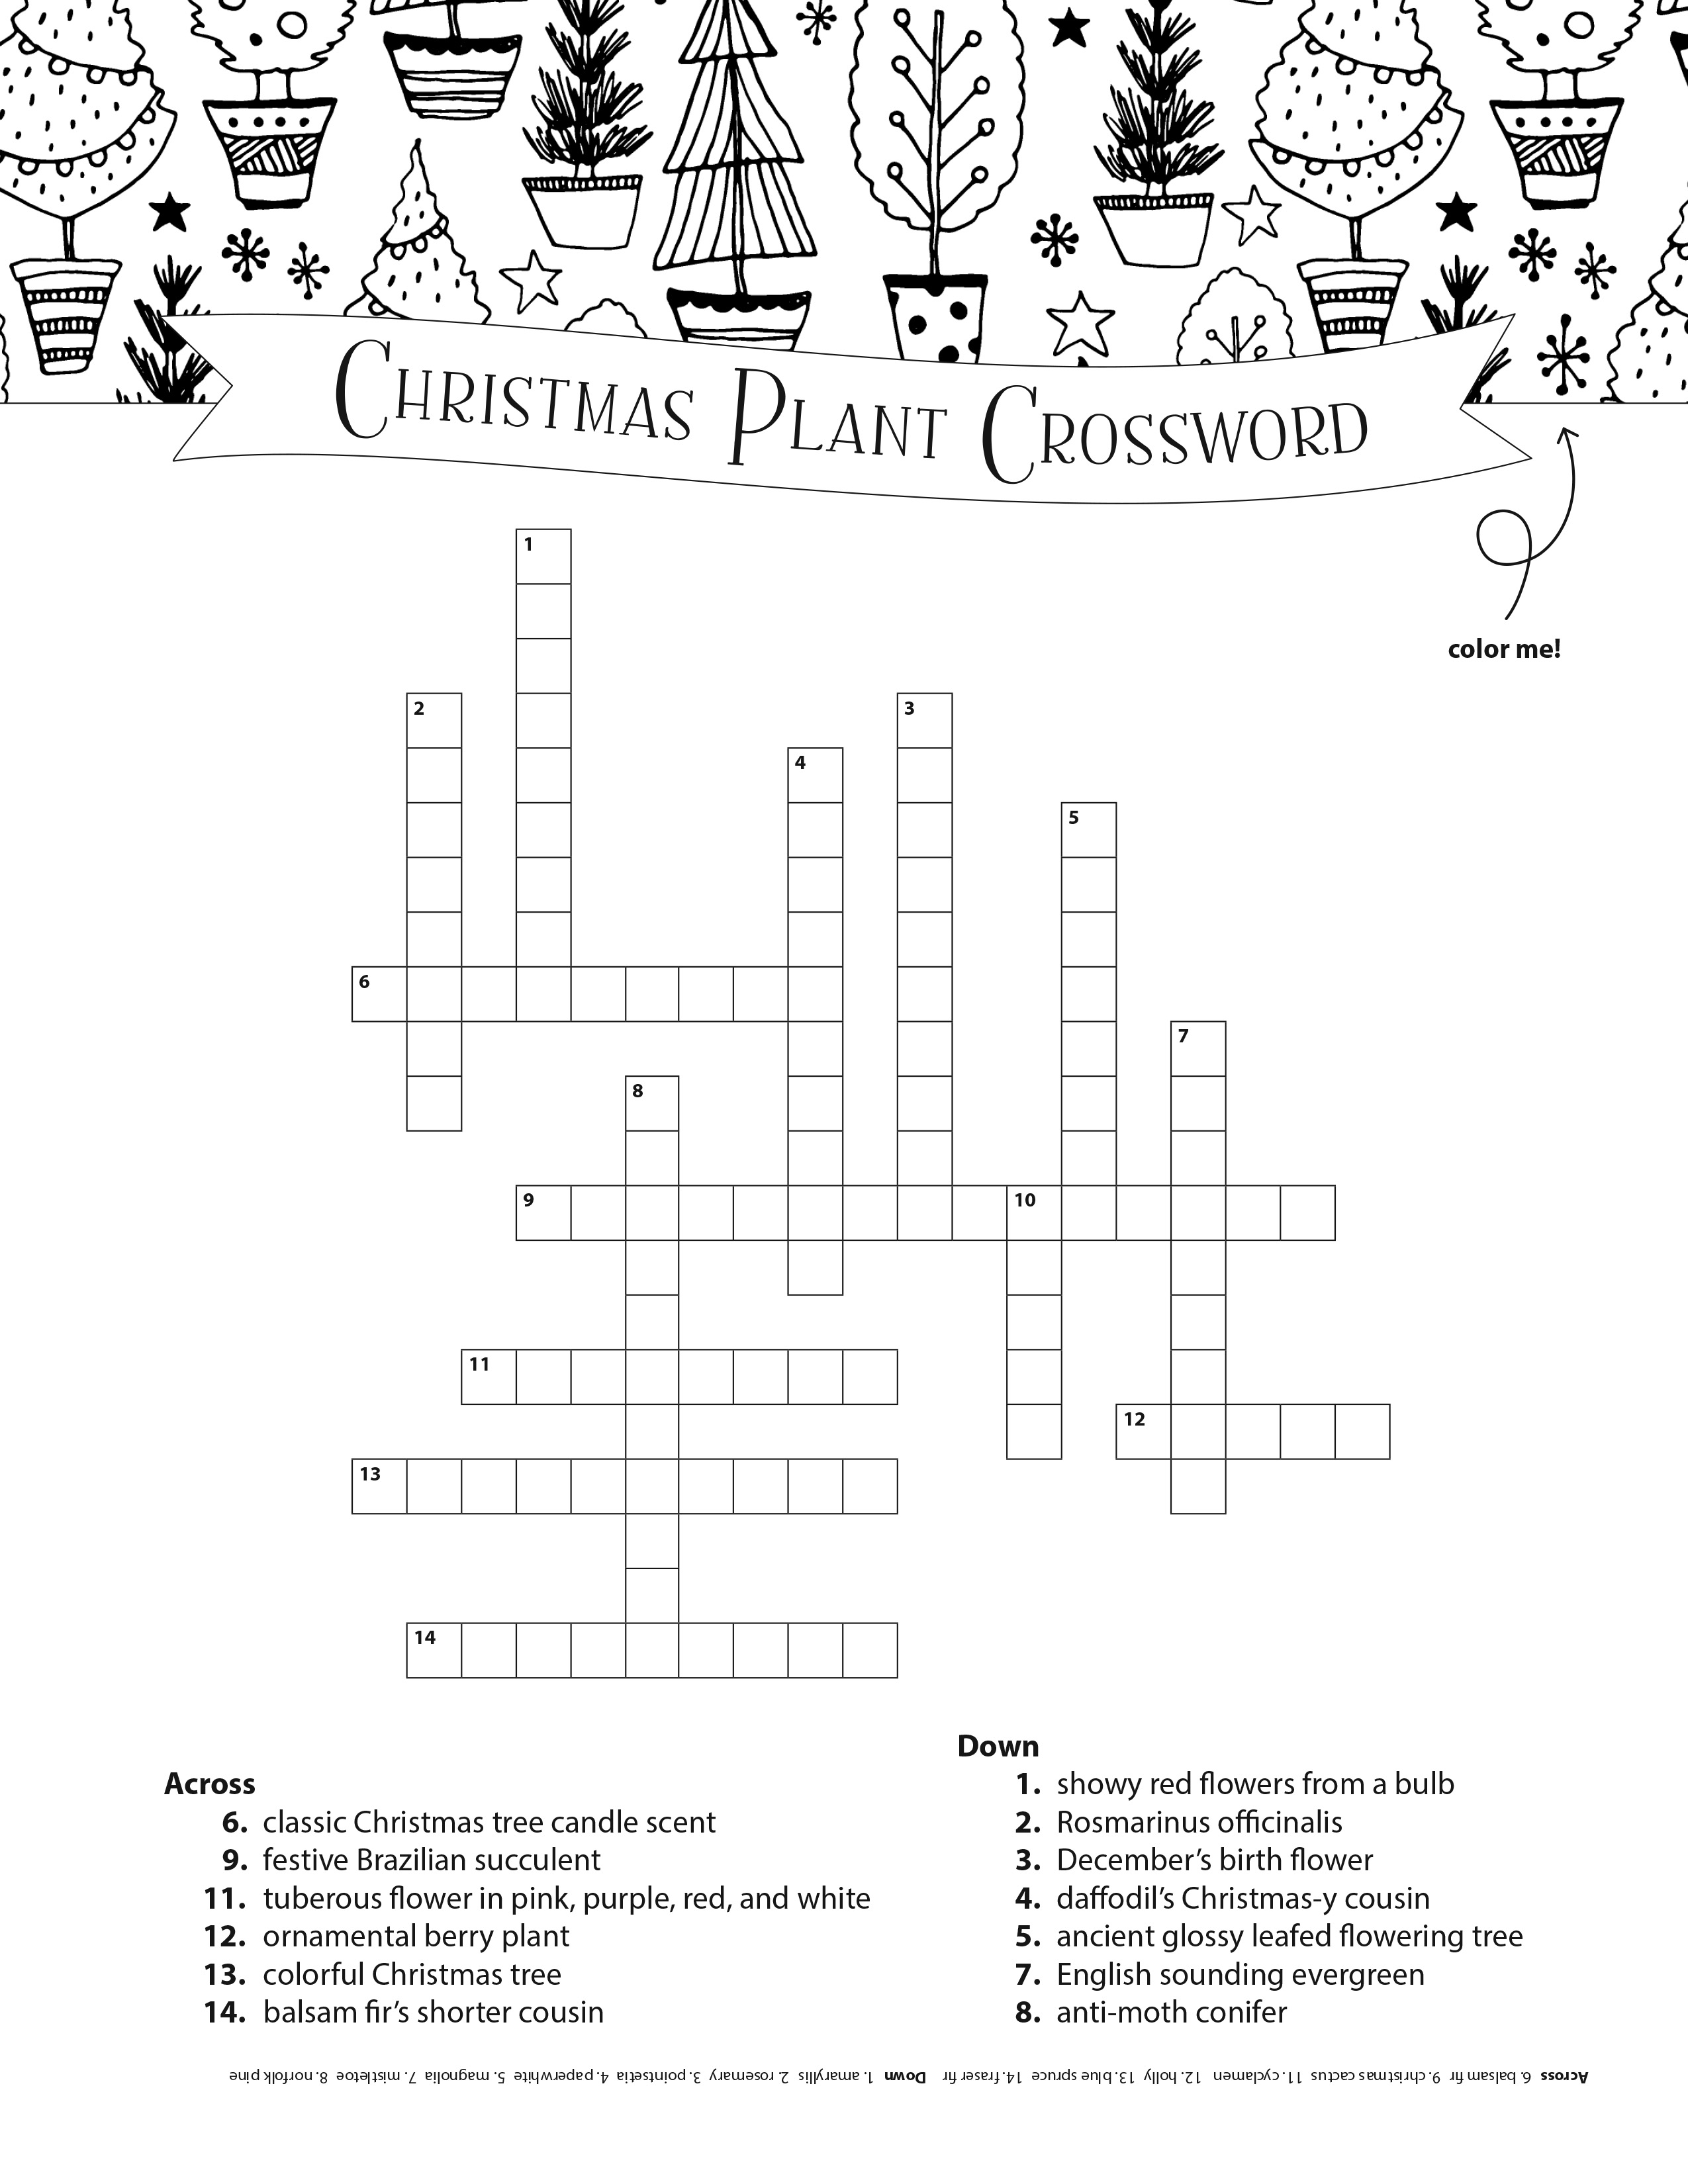 Composure Crossword Clue